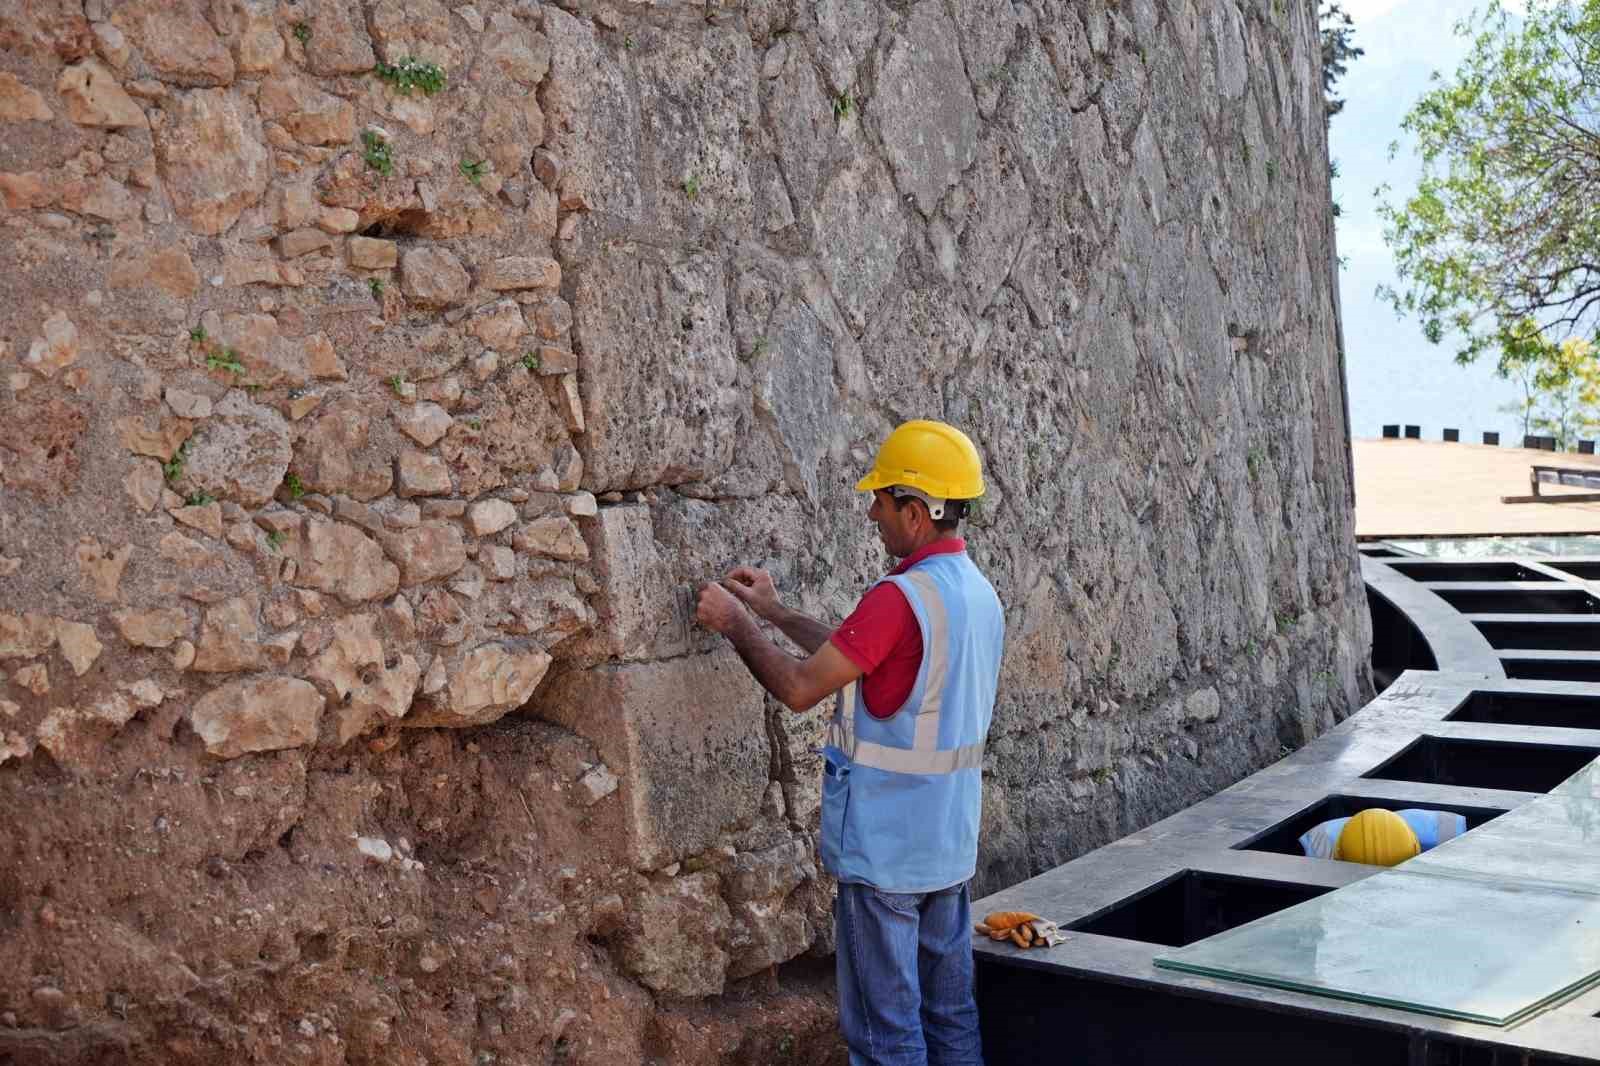 Antalya’da deniz manzaralı 3 bin 500 yıllık 800 metre uzunluğunda sütunlu cadde keşfedildi
